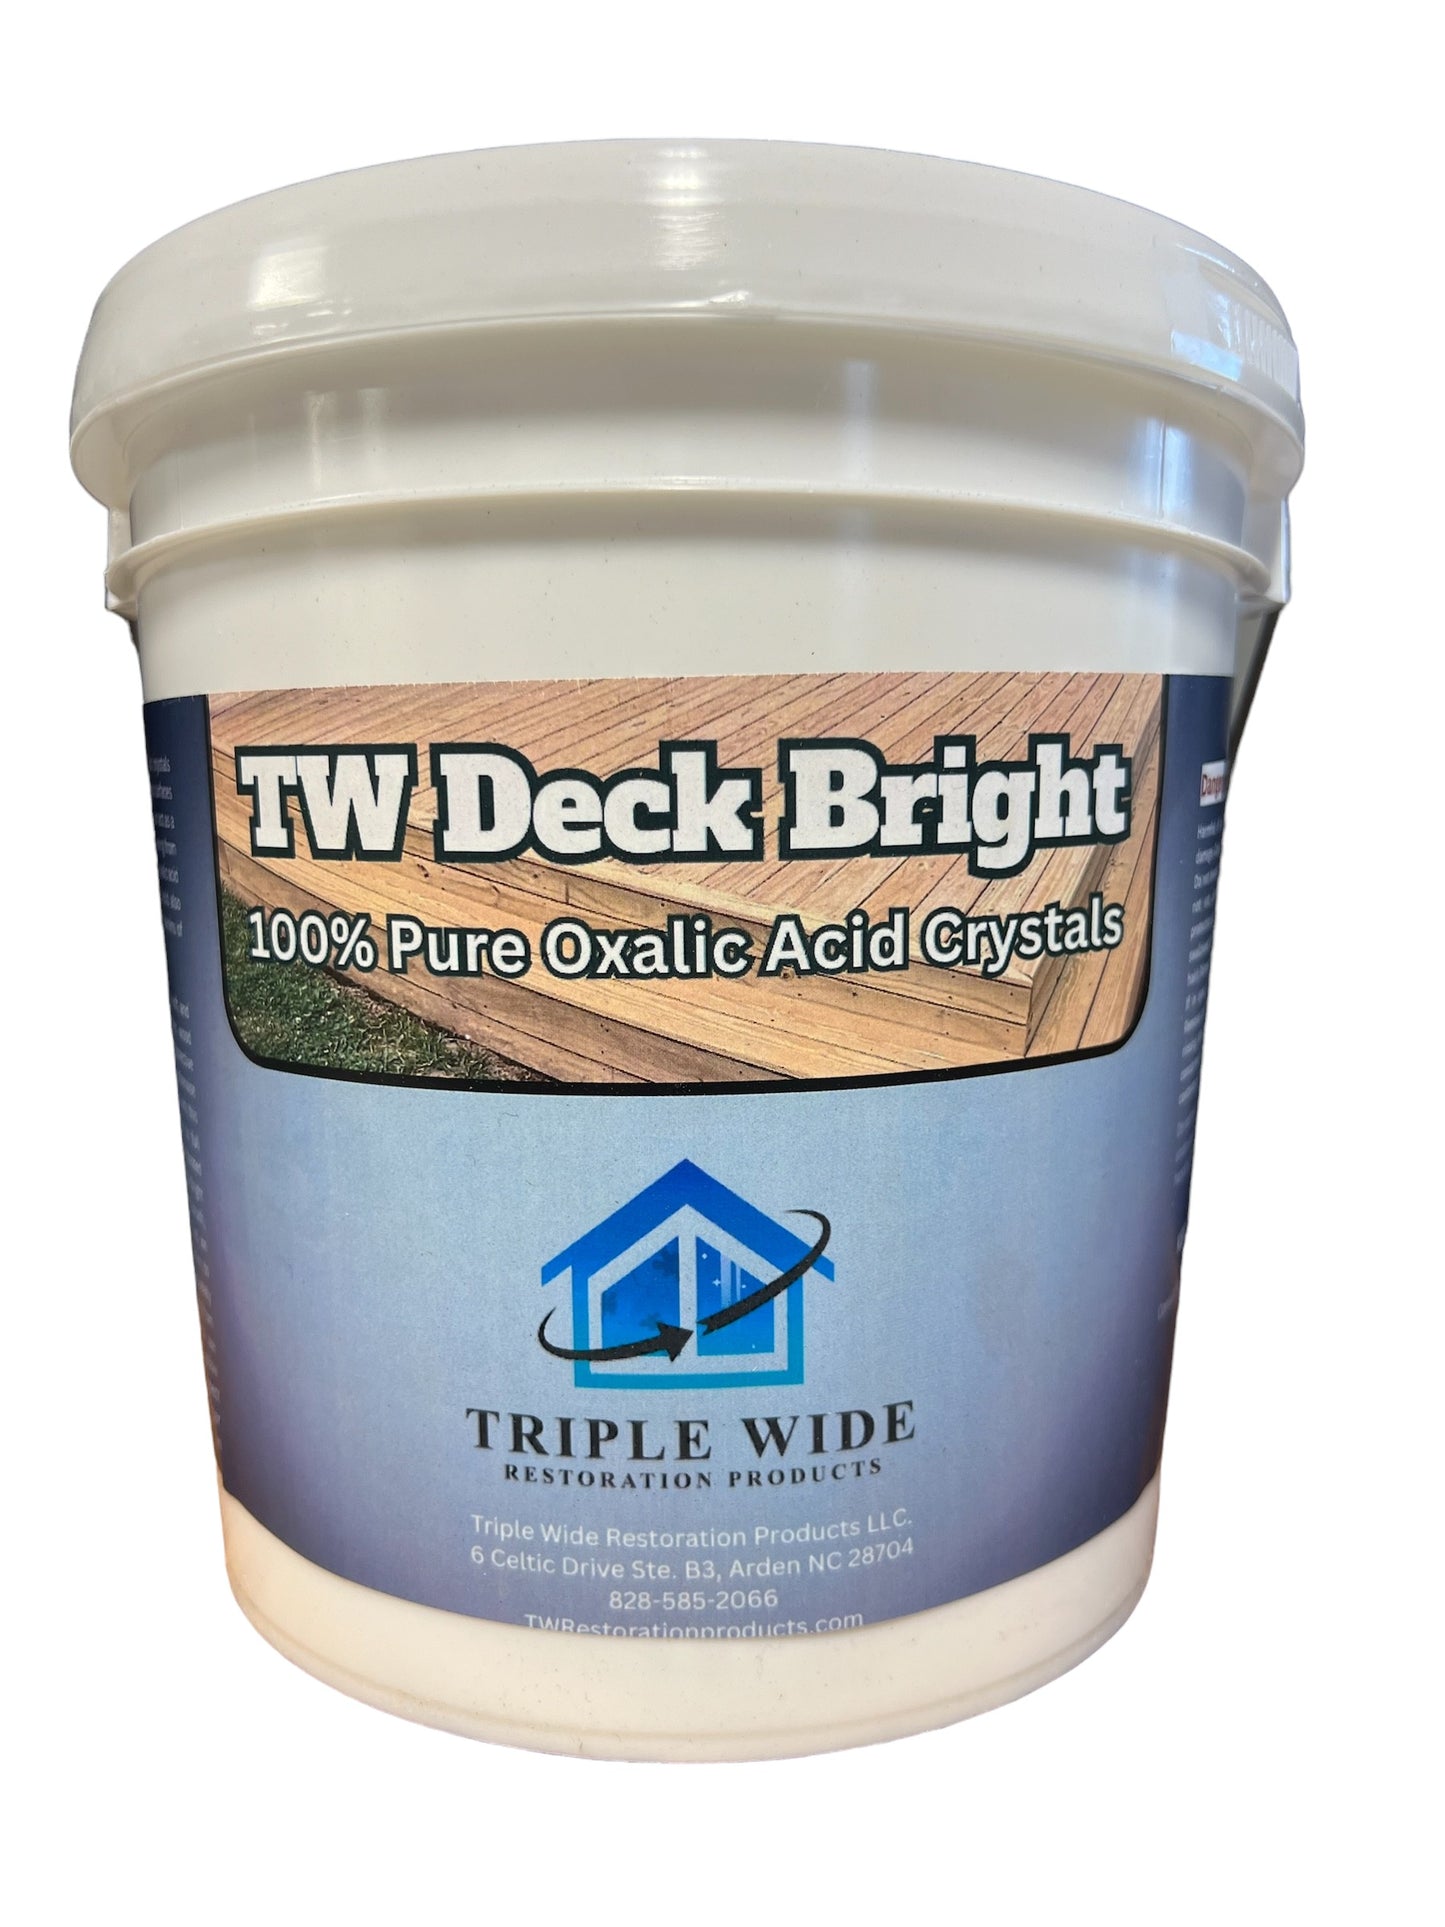 TW Deck Bright - 100% Pure Oxalic Acid